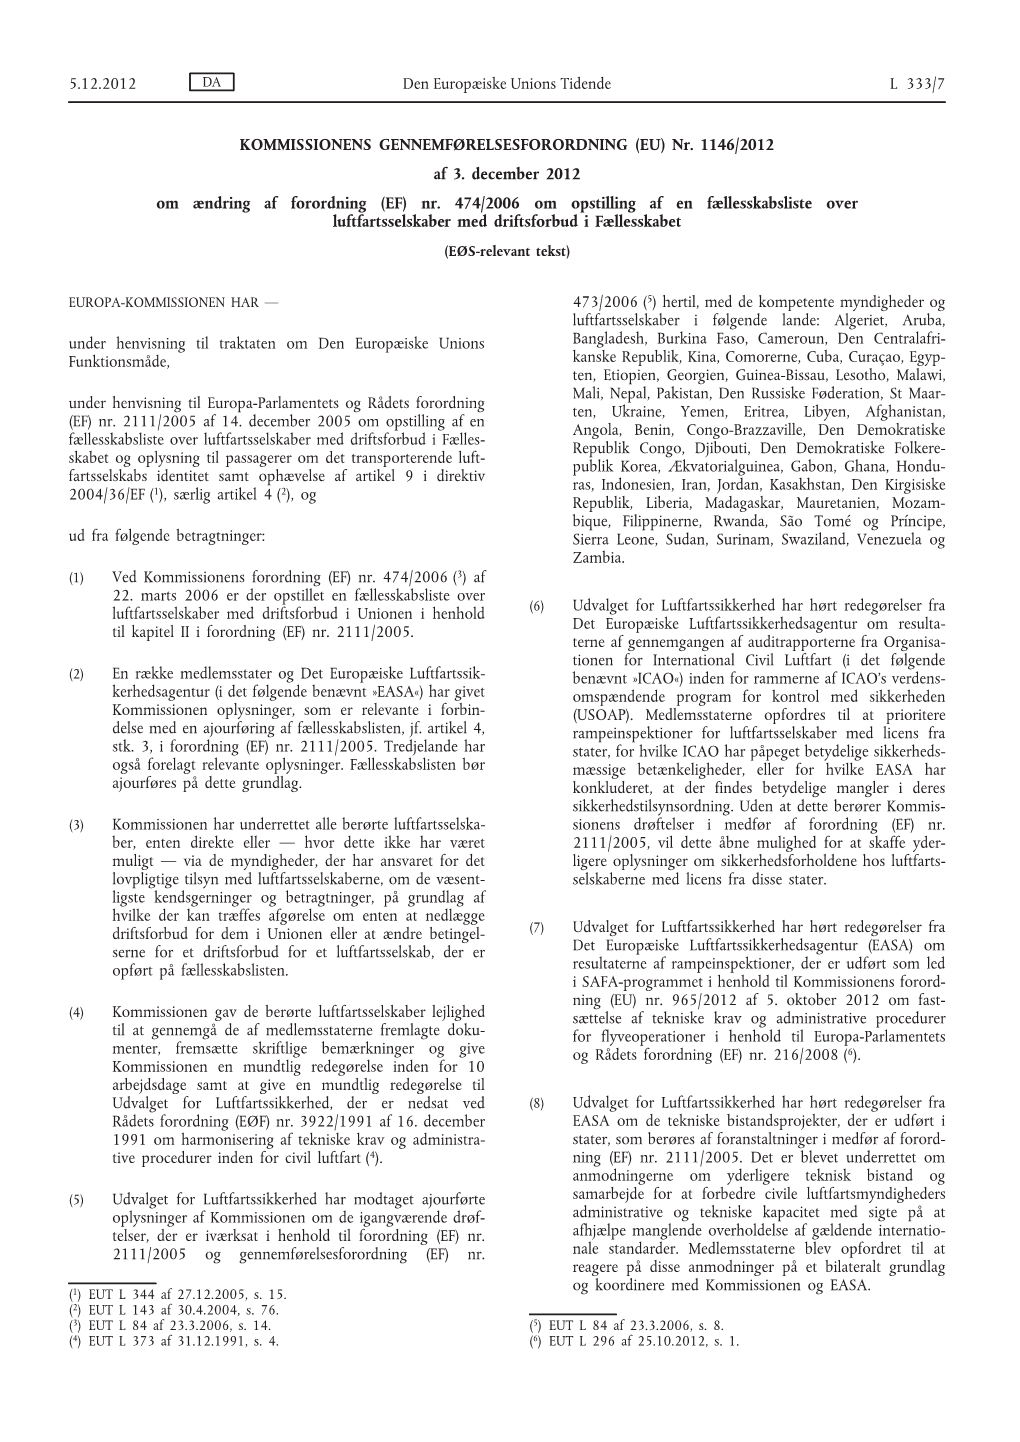 Nr. 1146/2012 Af 3. December 2012 Om Ændring Af Forordning (EF) Nr